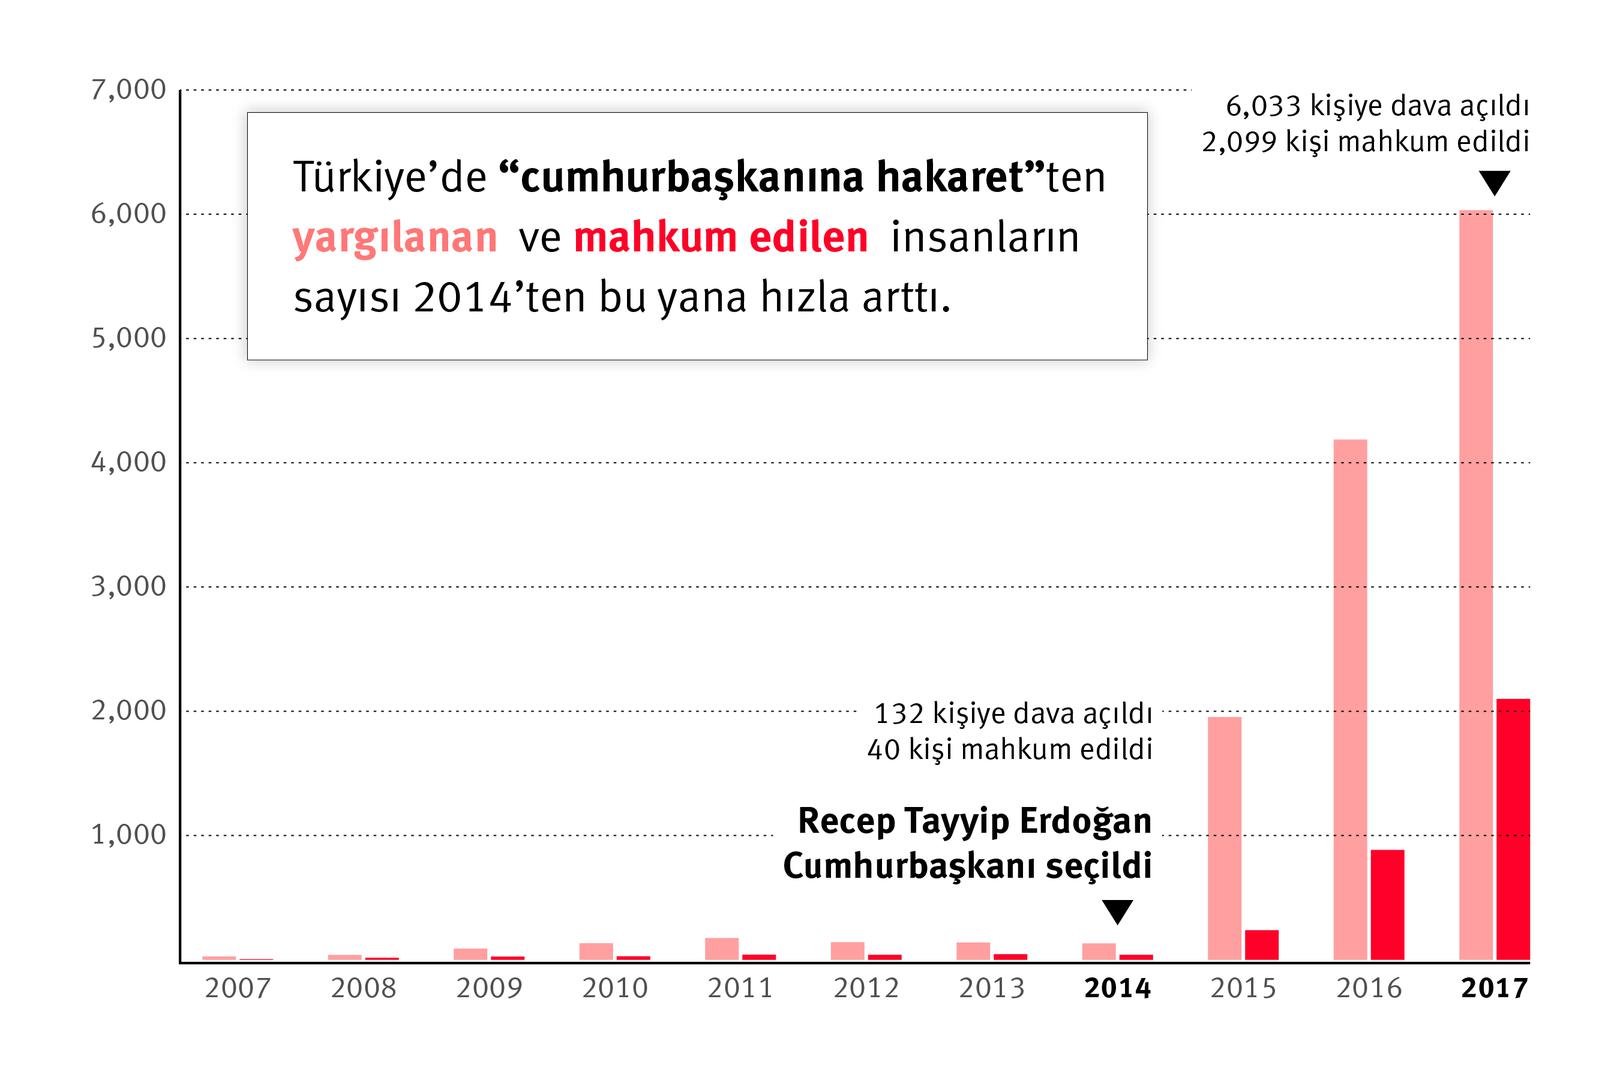 (TRK) Turkey graph 